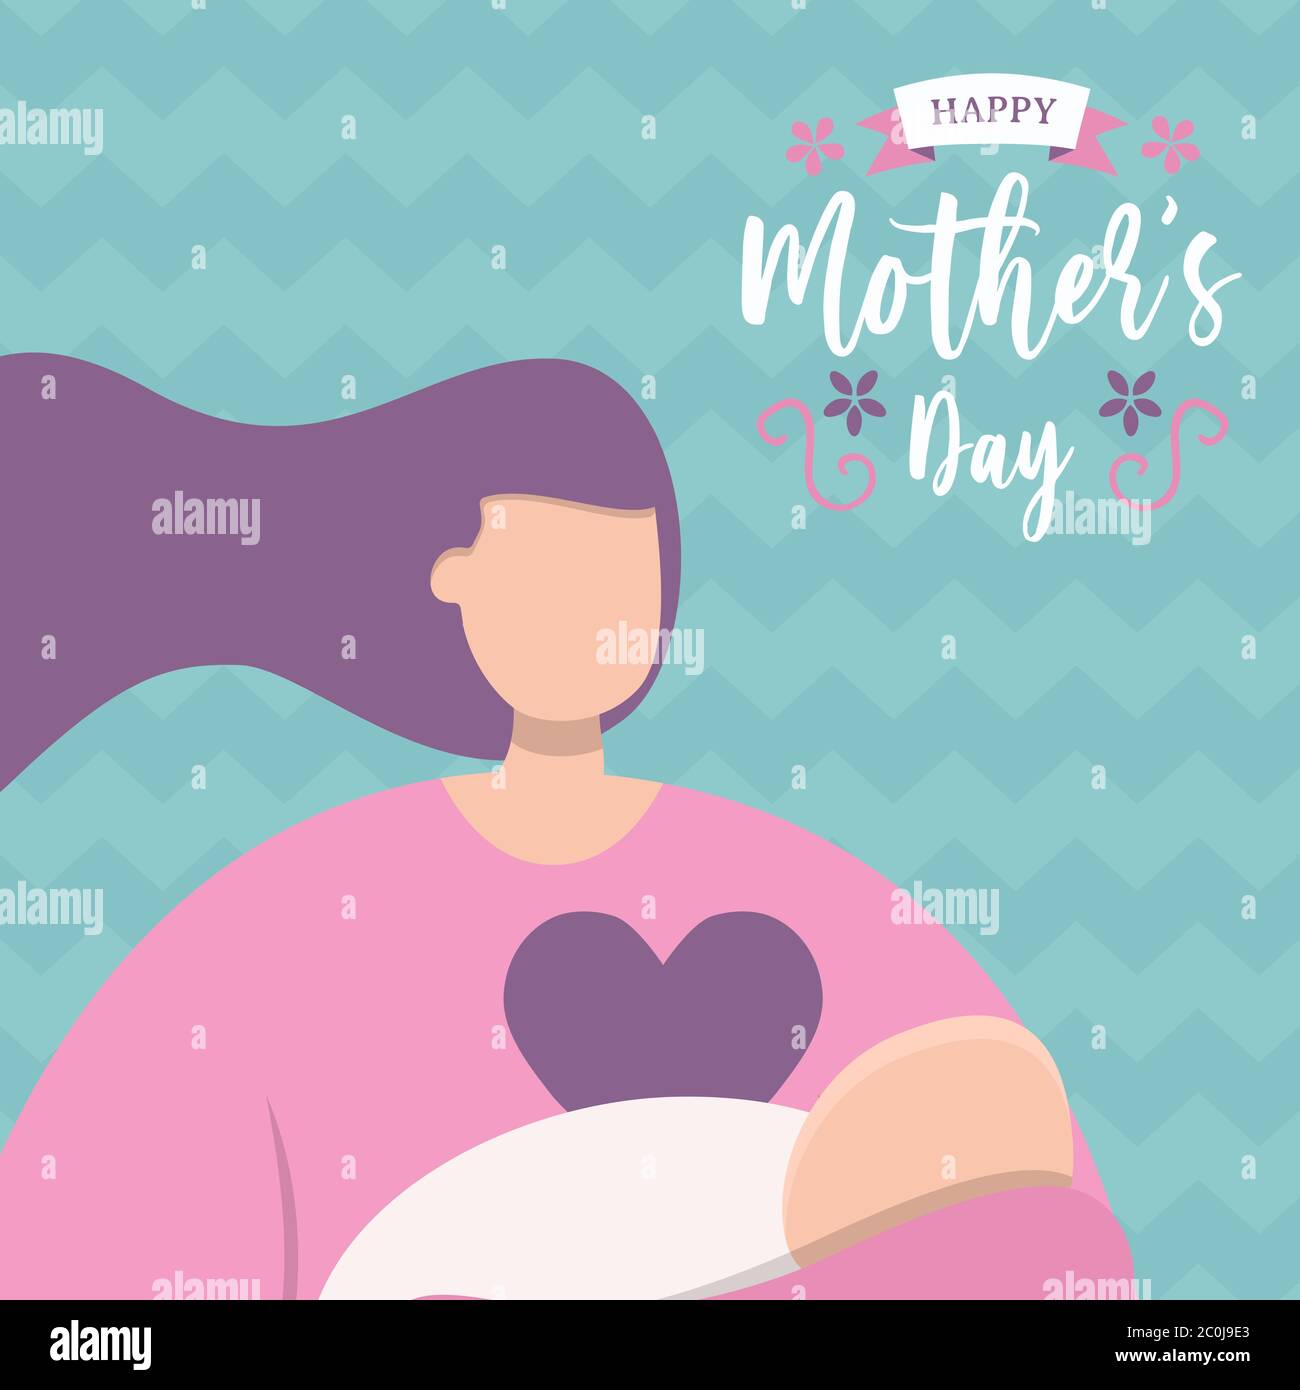 Felice scheda di saluto del giorno della Madre, mamma che tiene bambino con messaggio di citazione di testo floreale per la vacanza amore della madre. Illustrazione Vettoriale